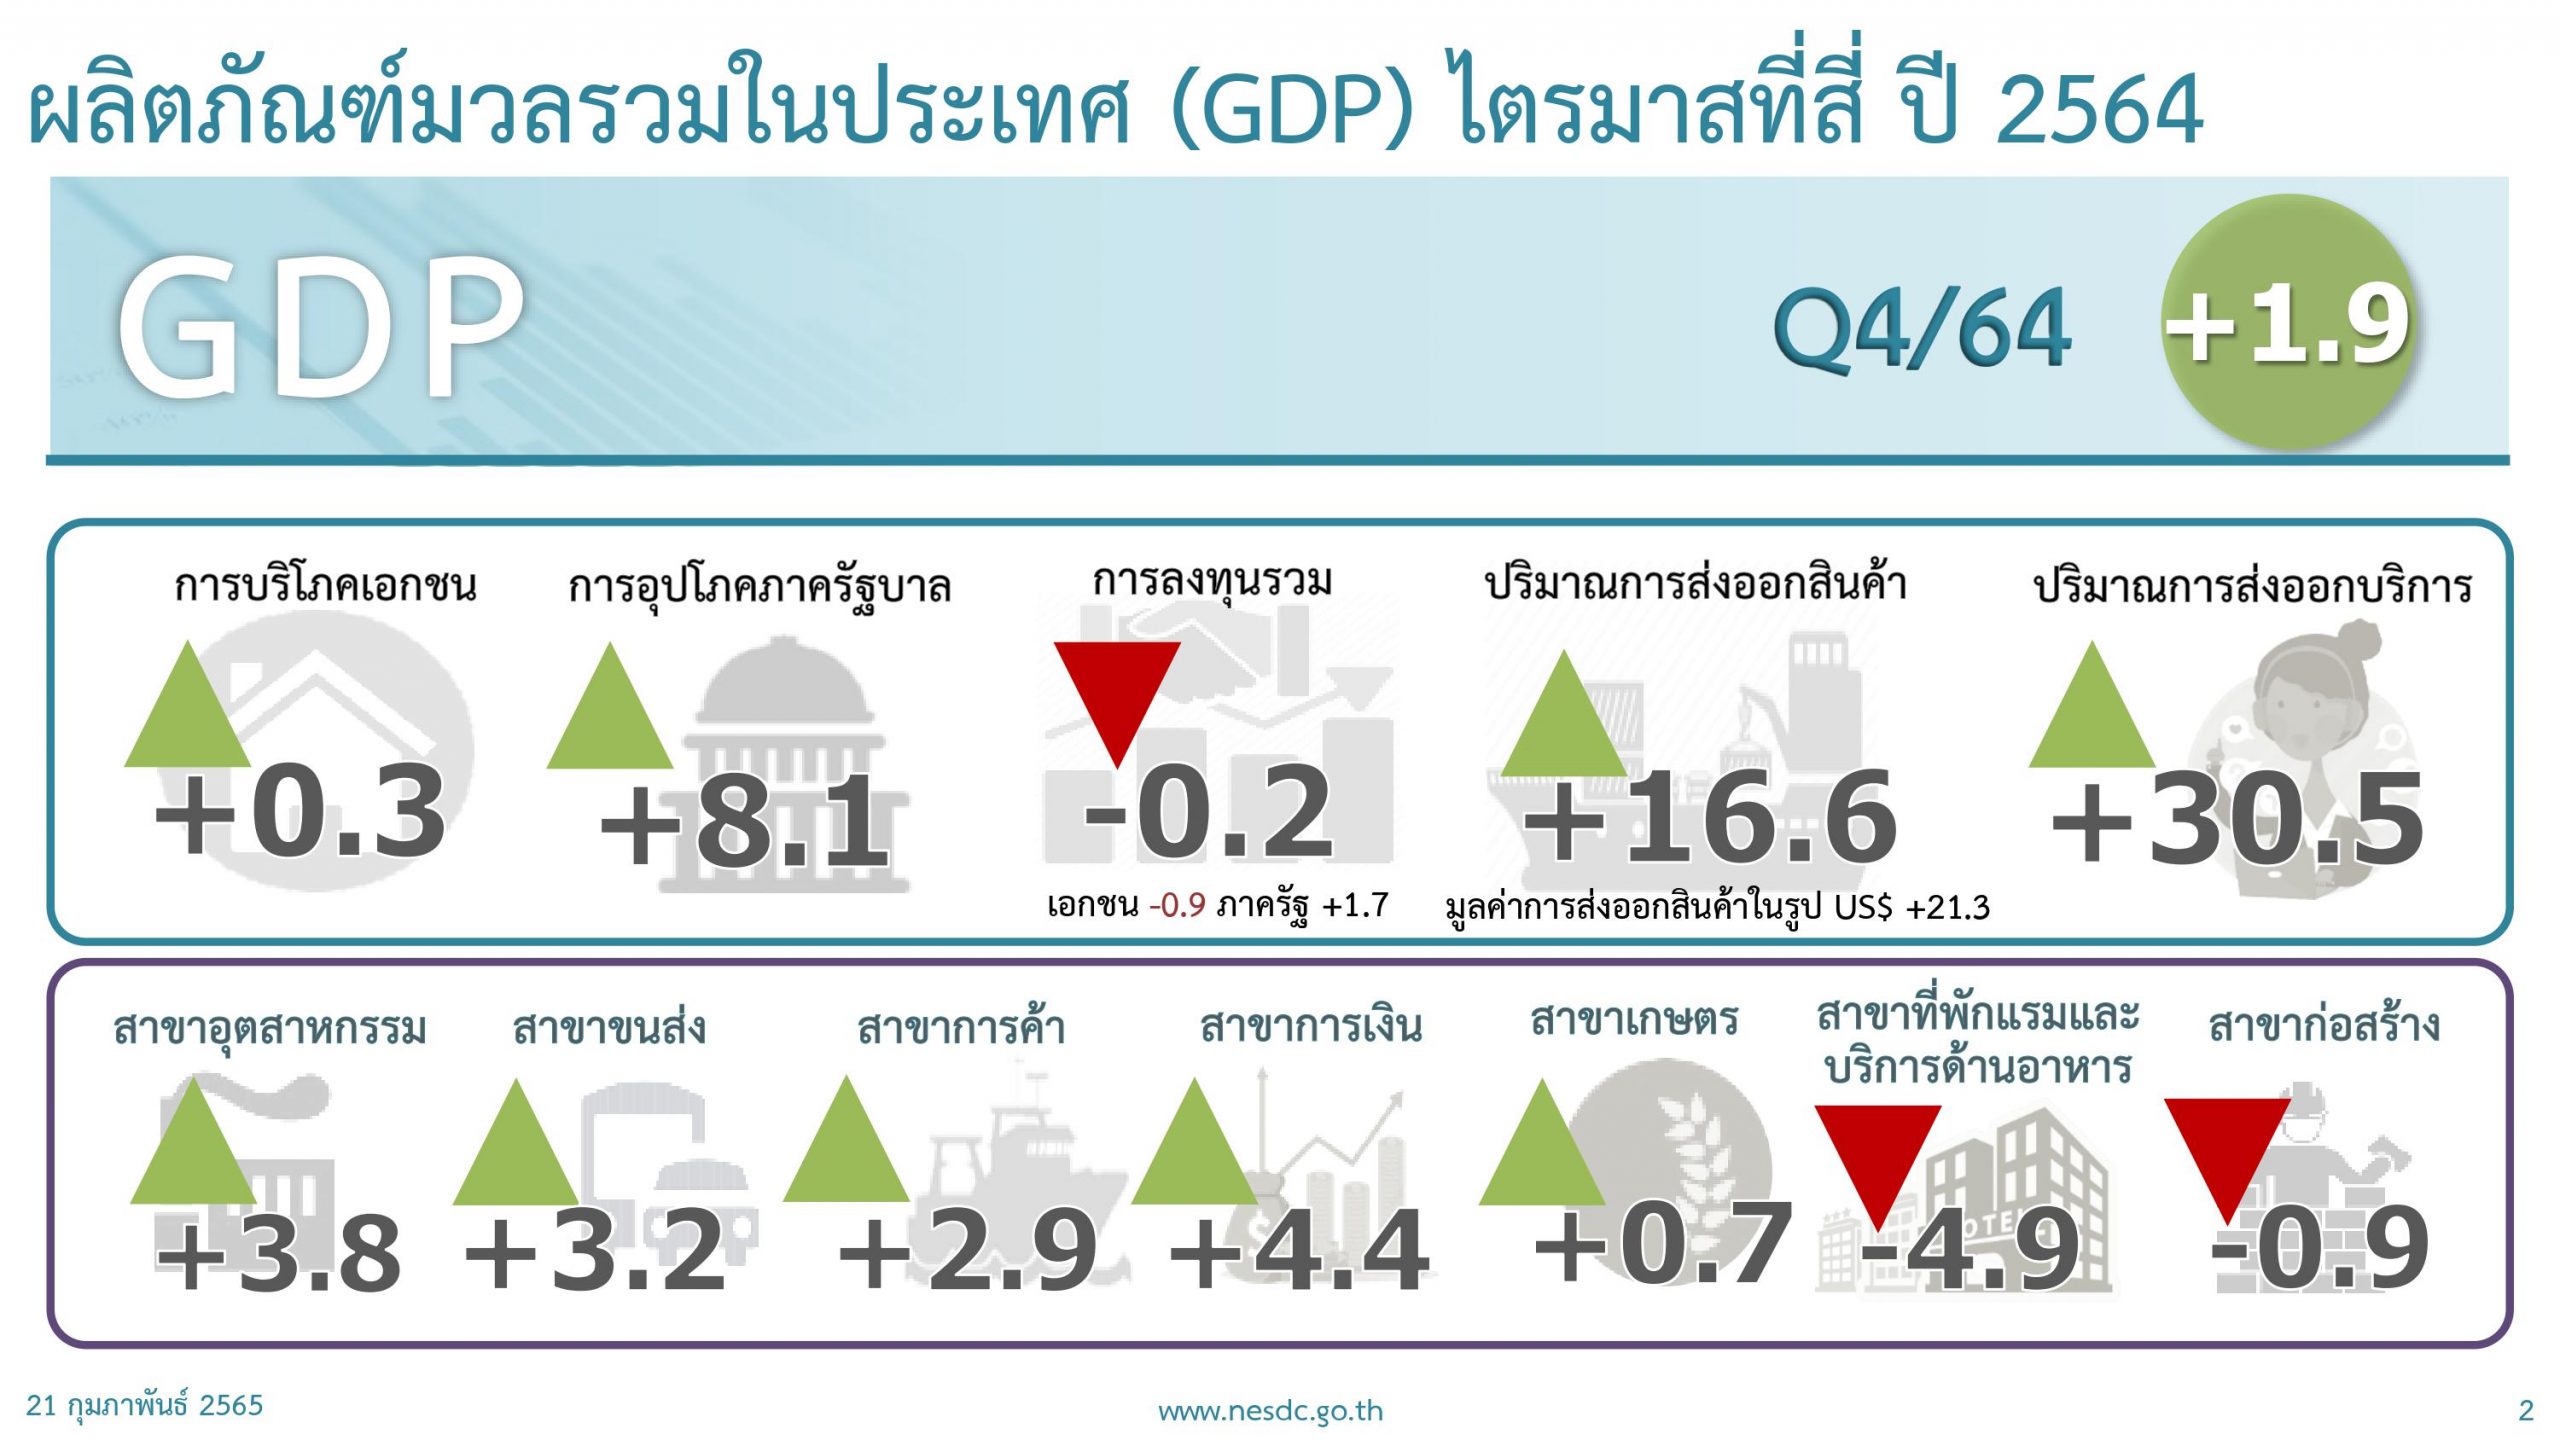 เศรษฐกิจไทยในไตรมาสที่ 4 ของปี 2564 ขยายตัว 1.9%